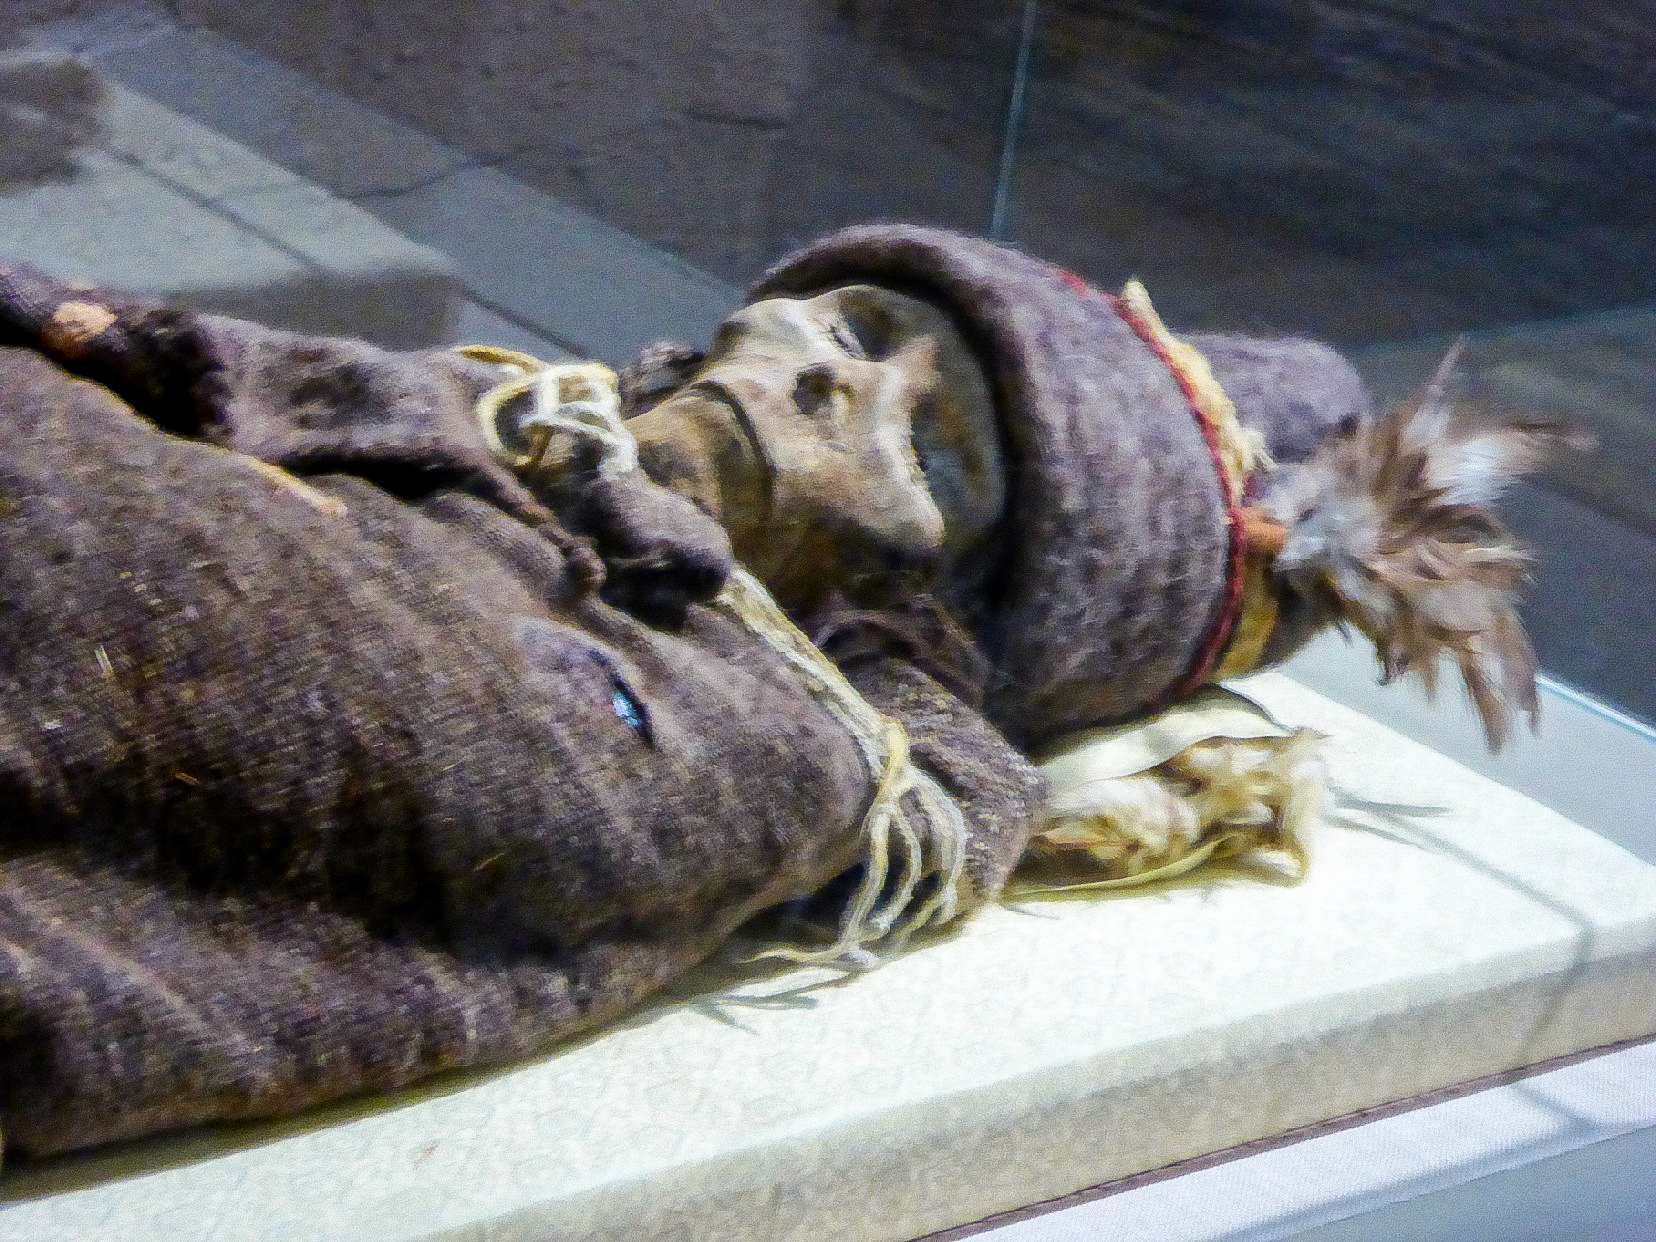 De "Xiaohe-mummie", tentoongesteld in het Xinjiang Museum, is een van de oudste Tarim-mummies, die meer dan 3800 jaar geleden dateert.